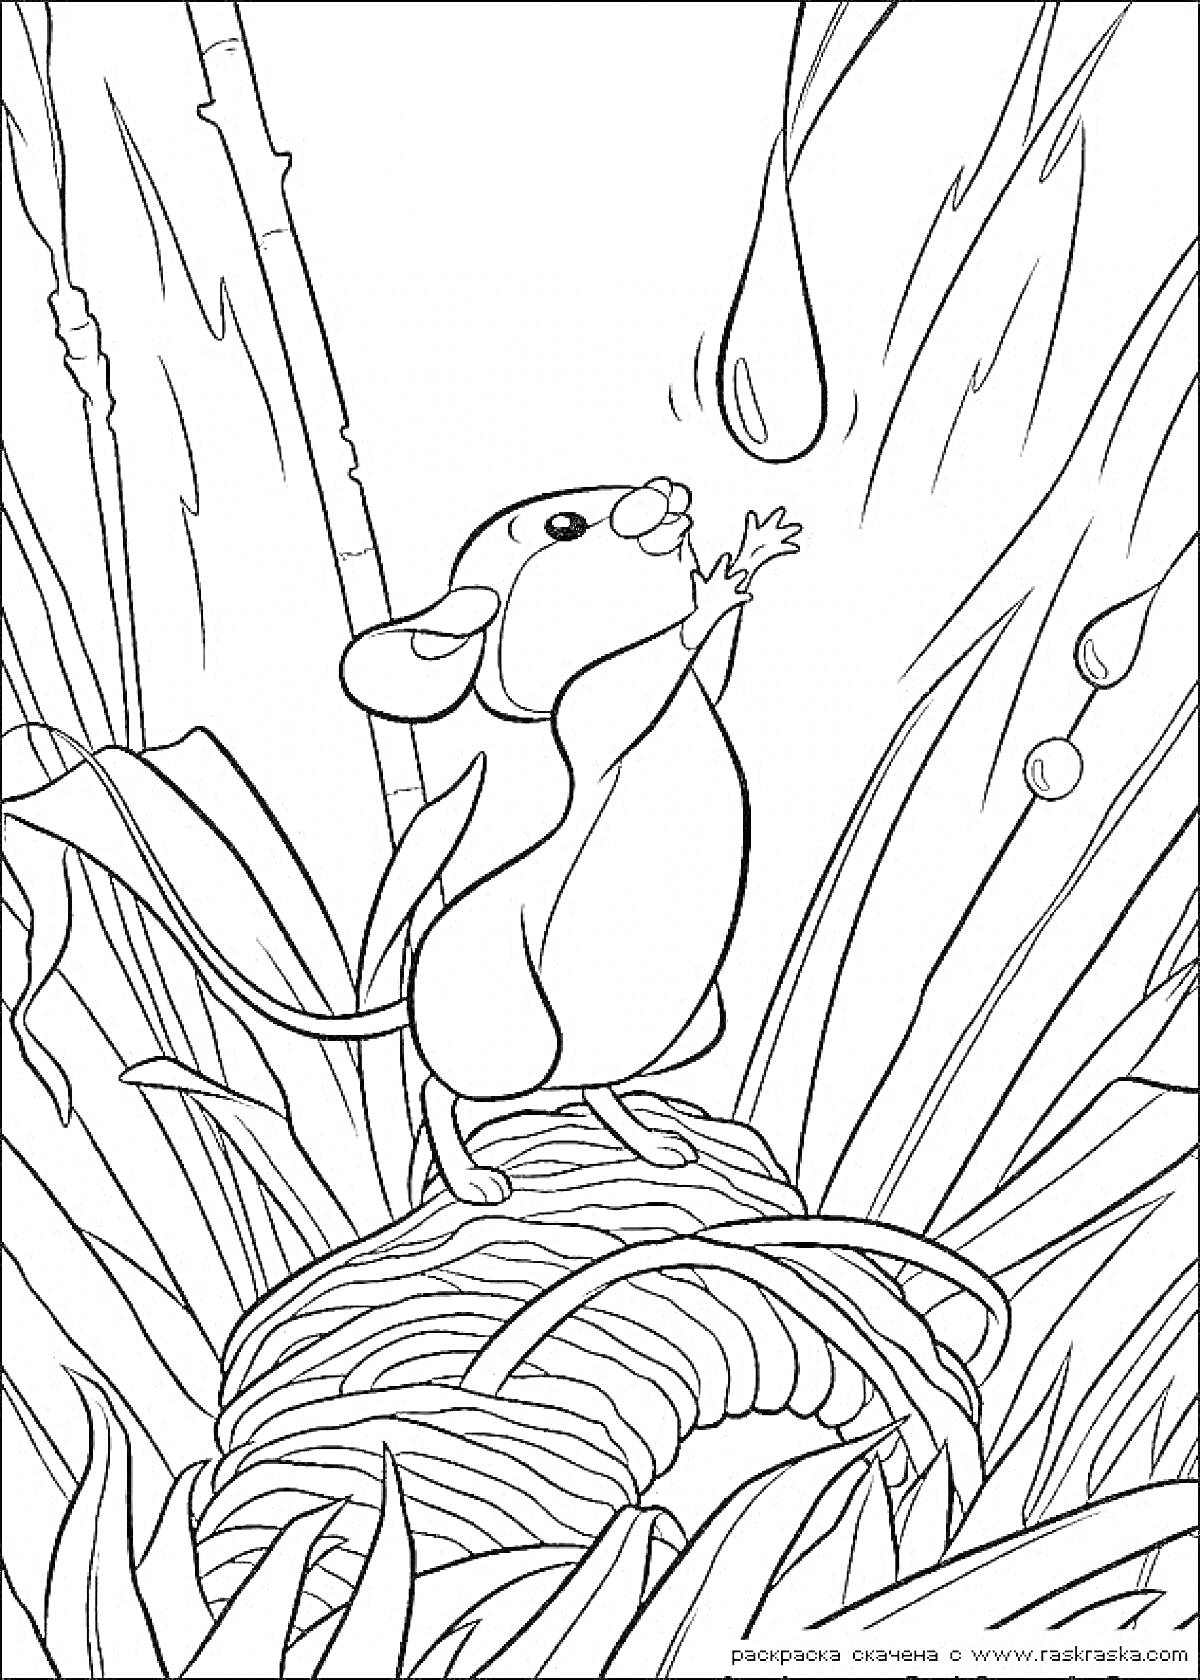 Раскраска Мышка на гнезде с вытянутыми лапками, растущие вокруг бамбук и трава, дождевые капли